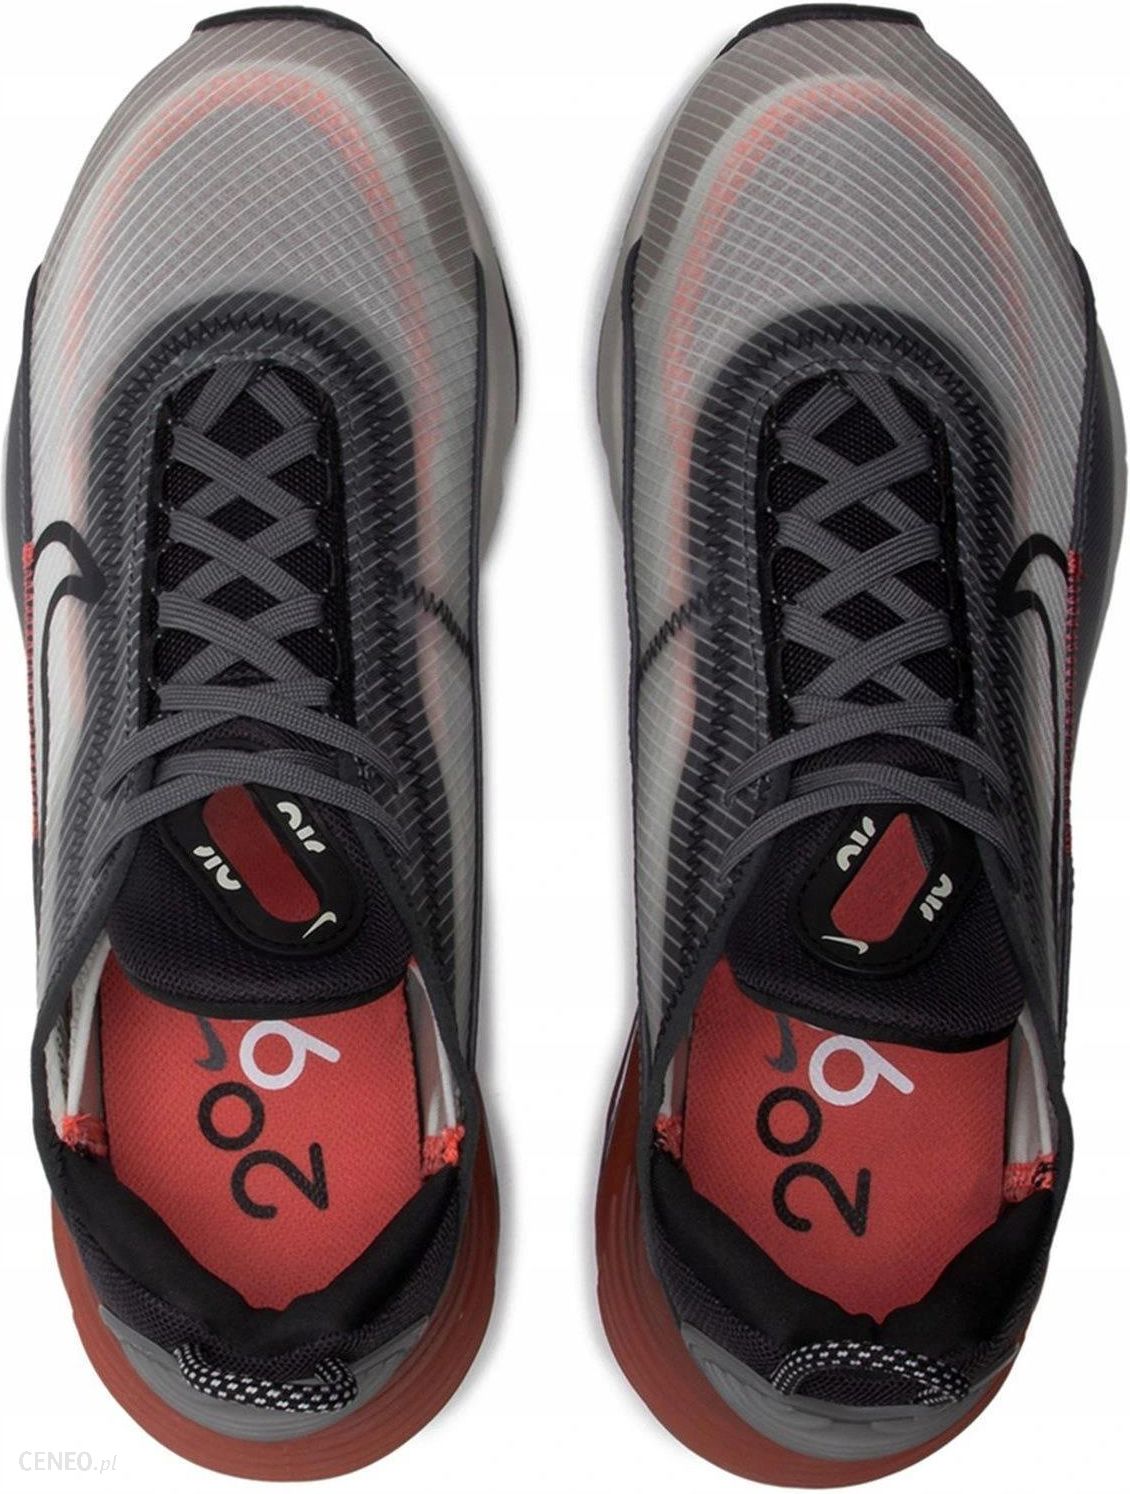 Buty sportowe męskie Nike Air Max 2090 – czy to najlepszy model od